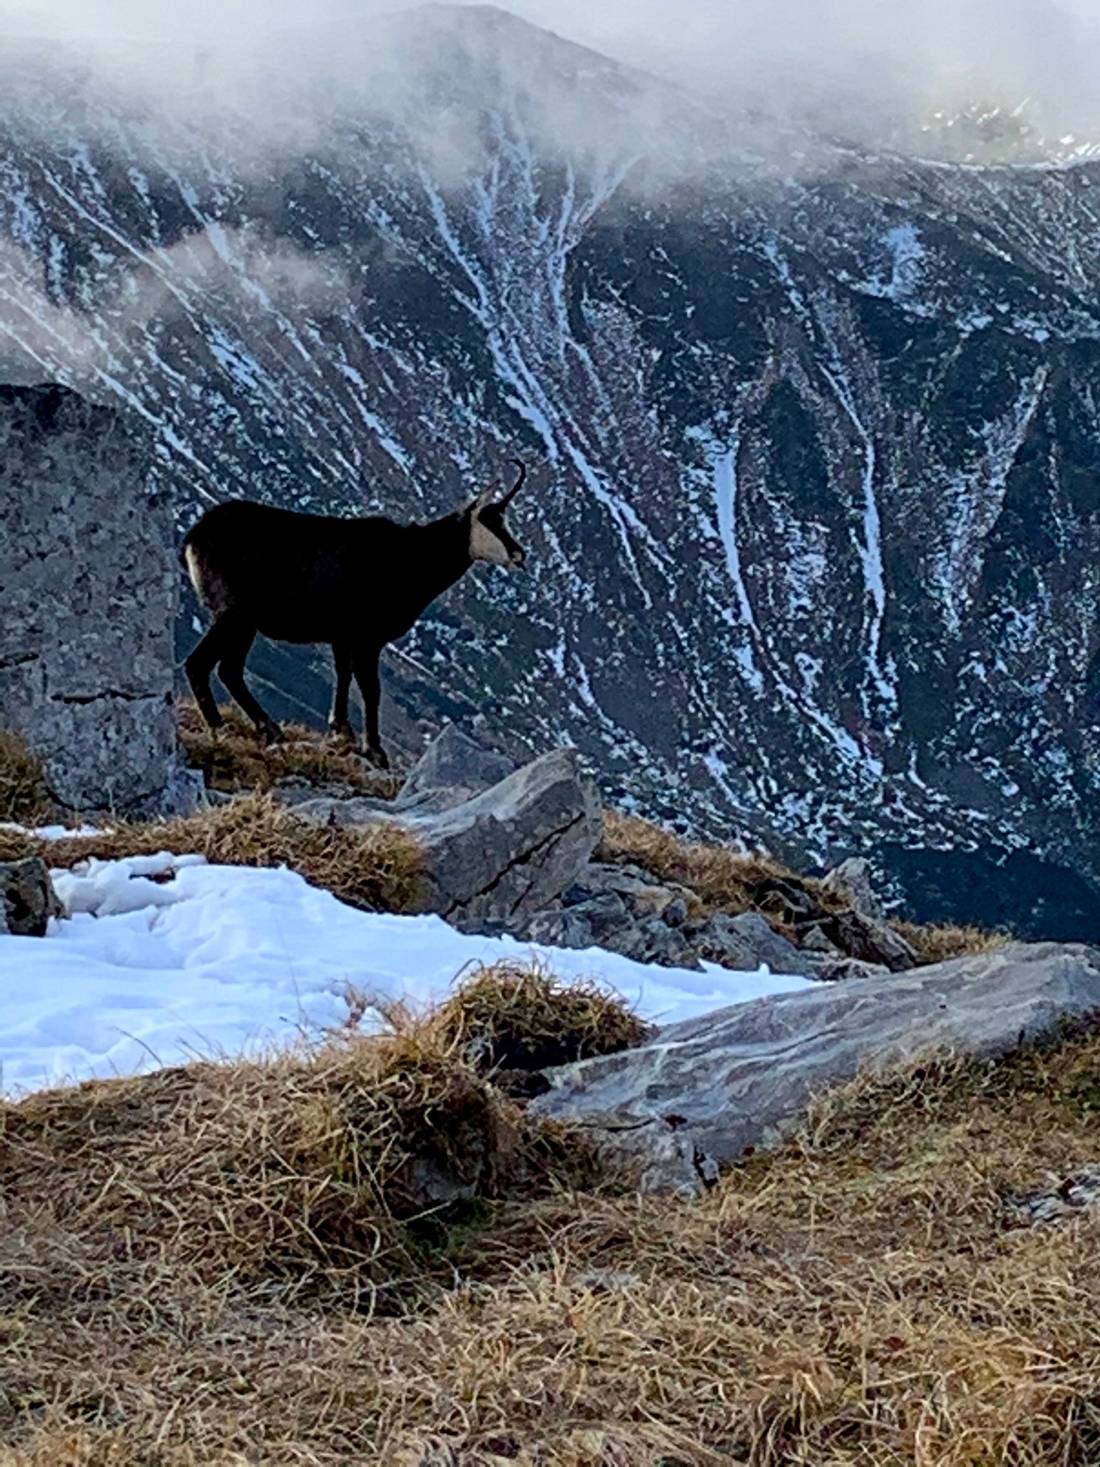 A mountain goat at Czerwone Wierchy, the Tatras, Poland/Slovakia